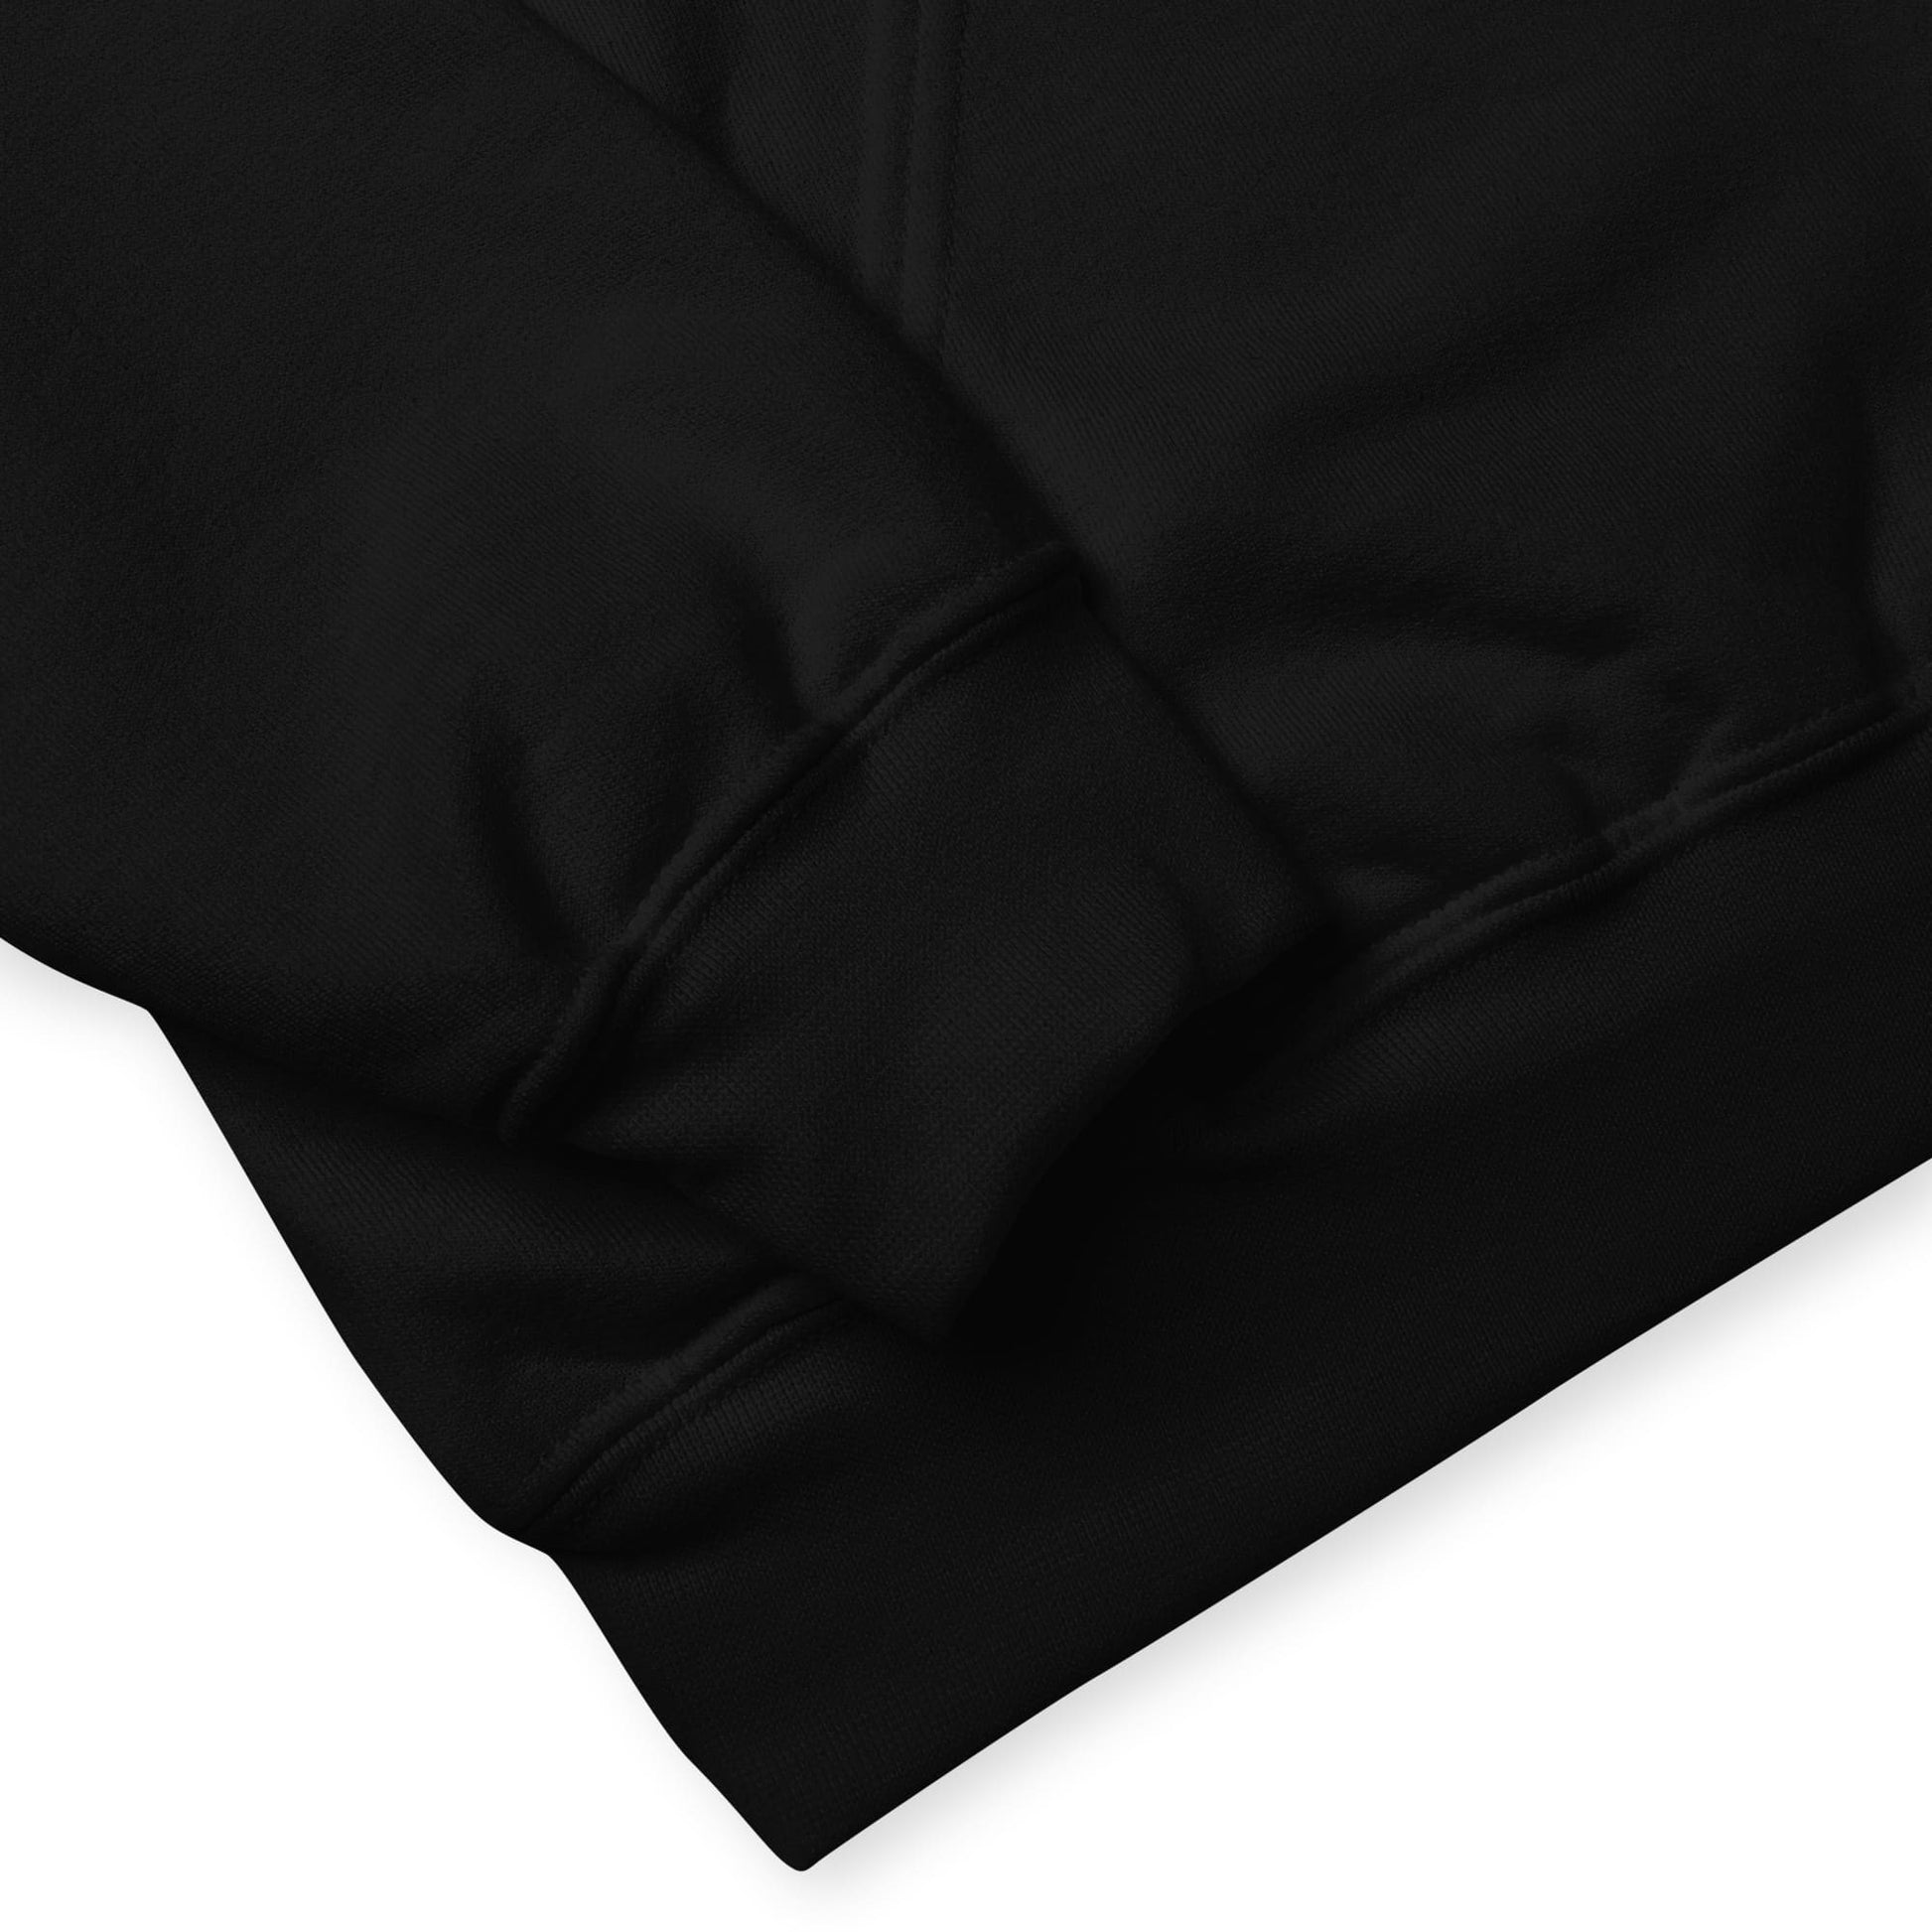 demigirl hoodie, subtle demigender pride flag embroidered pocket design hooded sweatshirt, sleeve